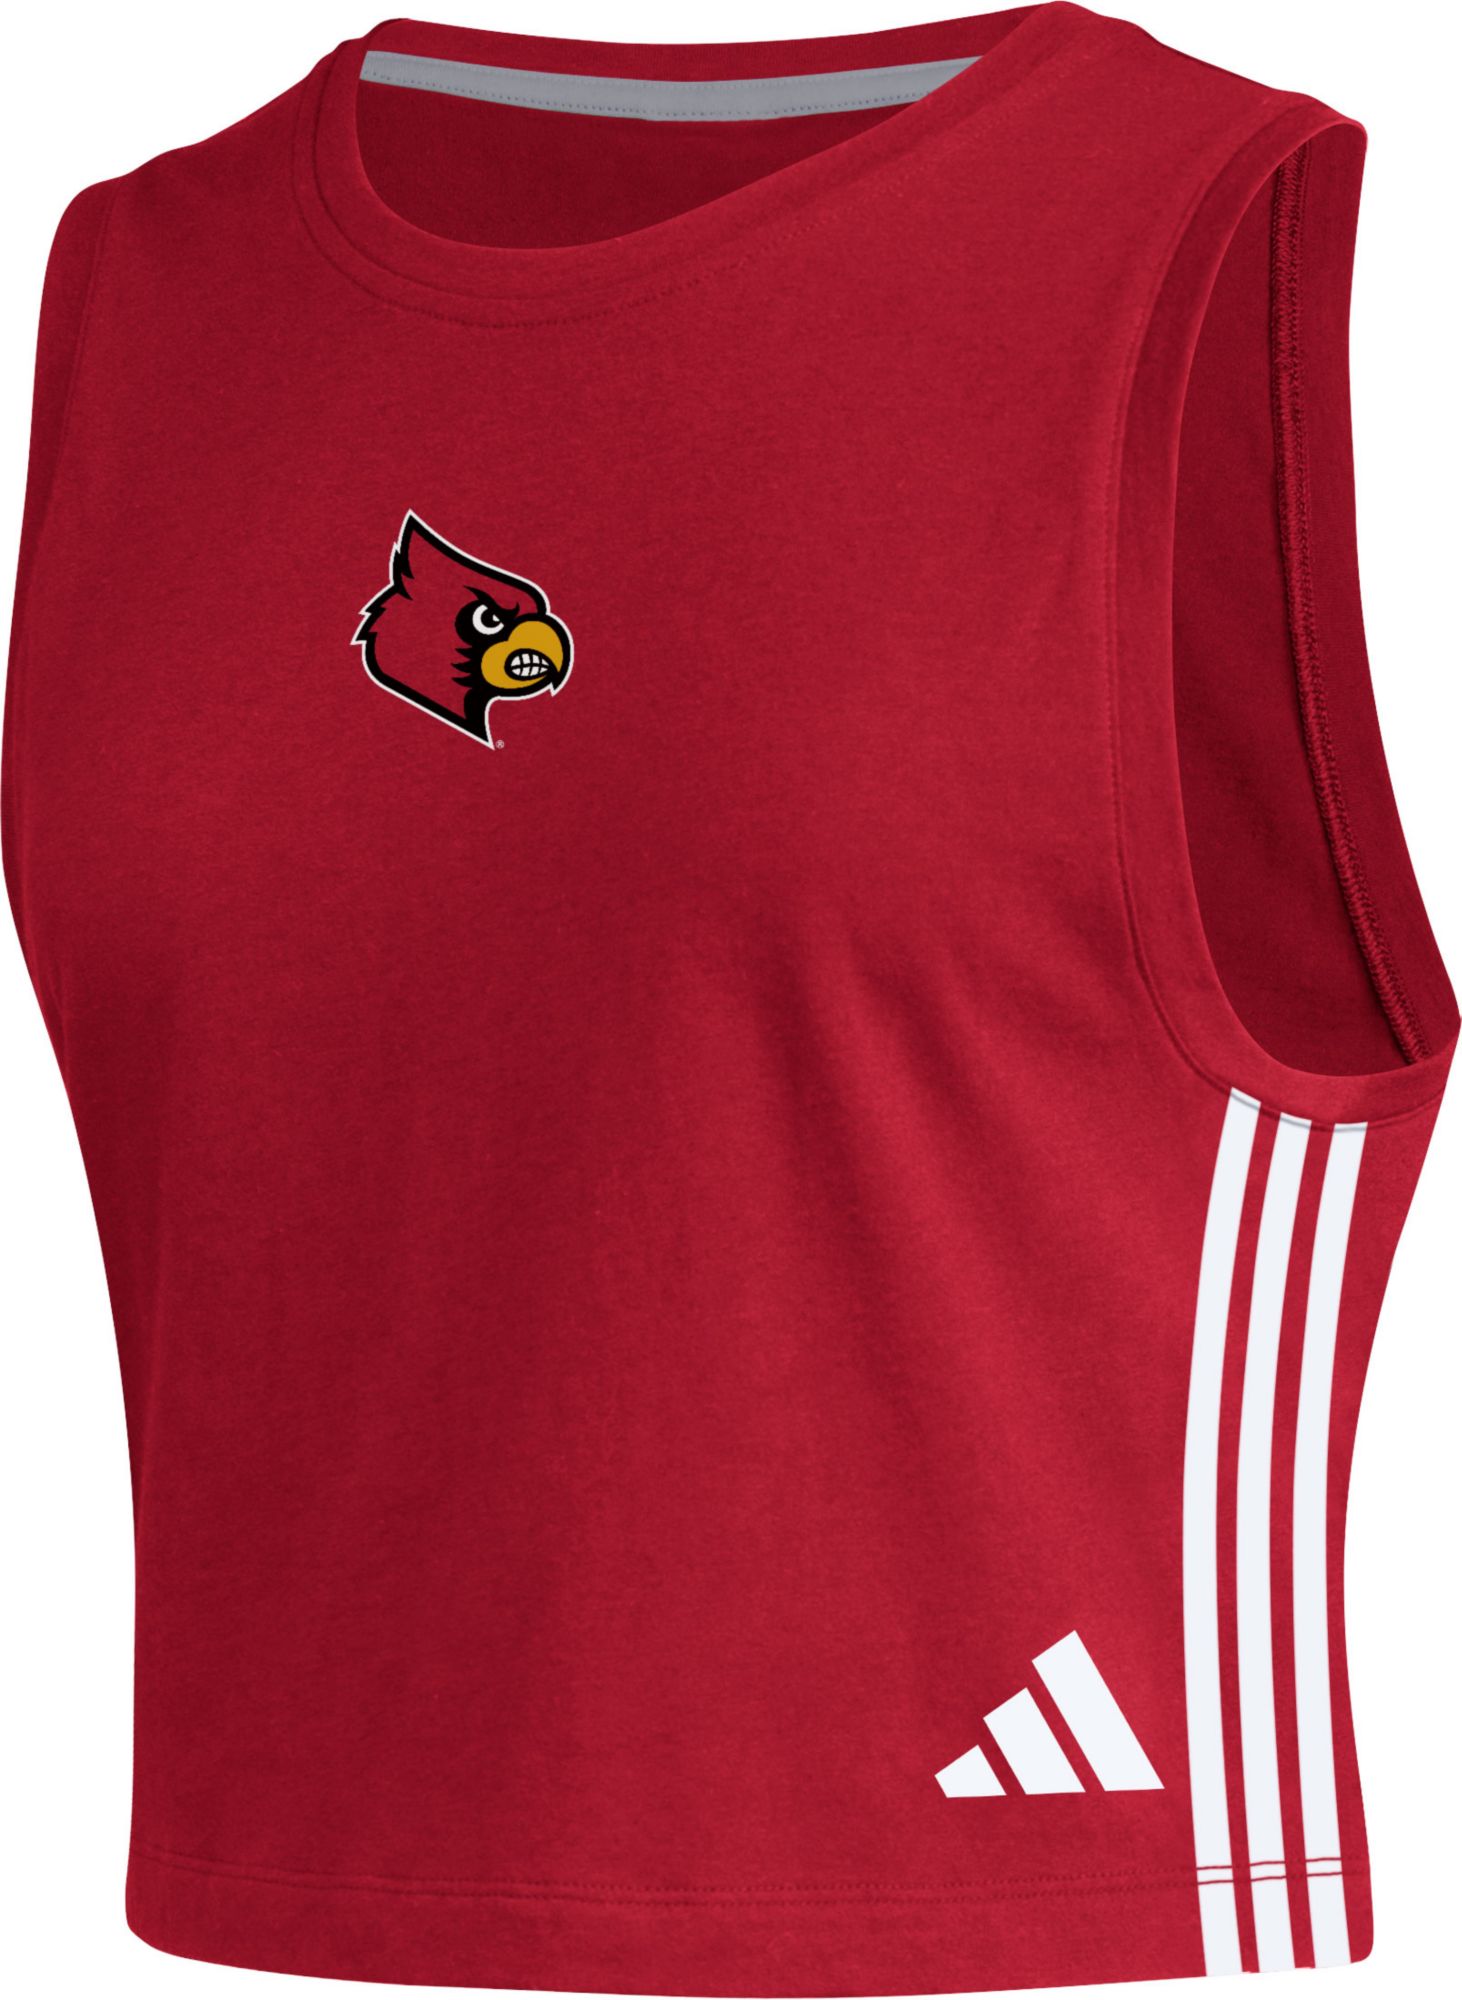 Louisville Cardinals women's jersey